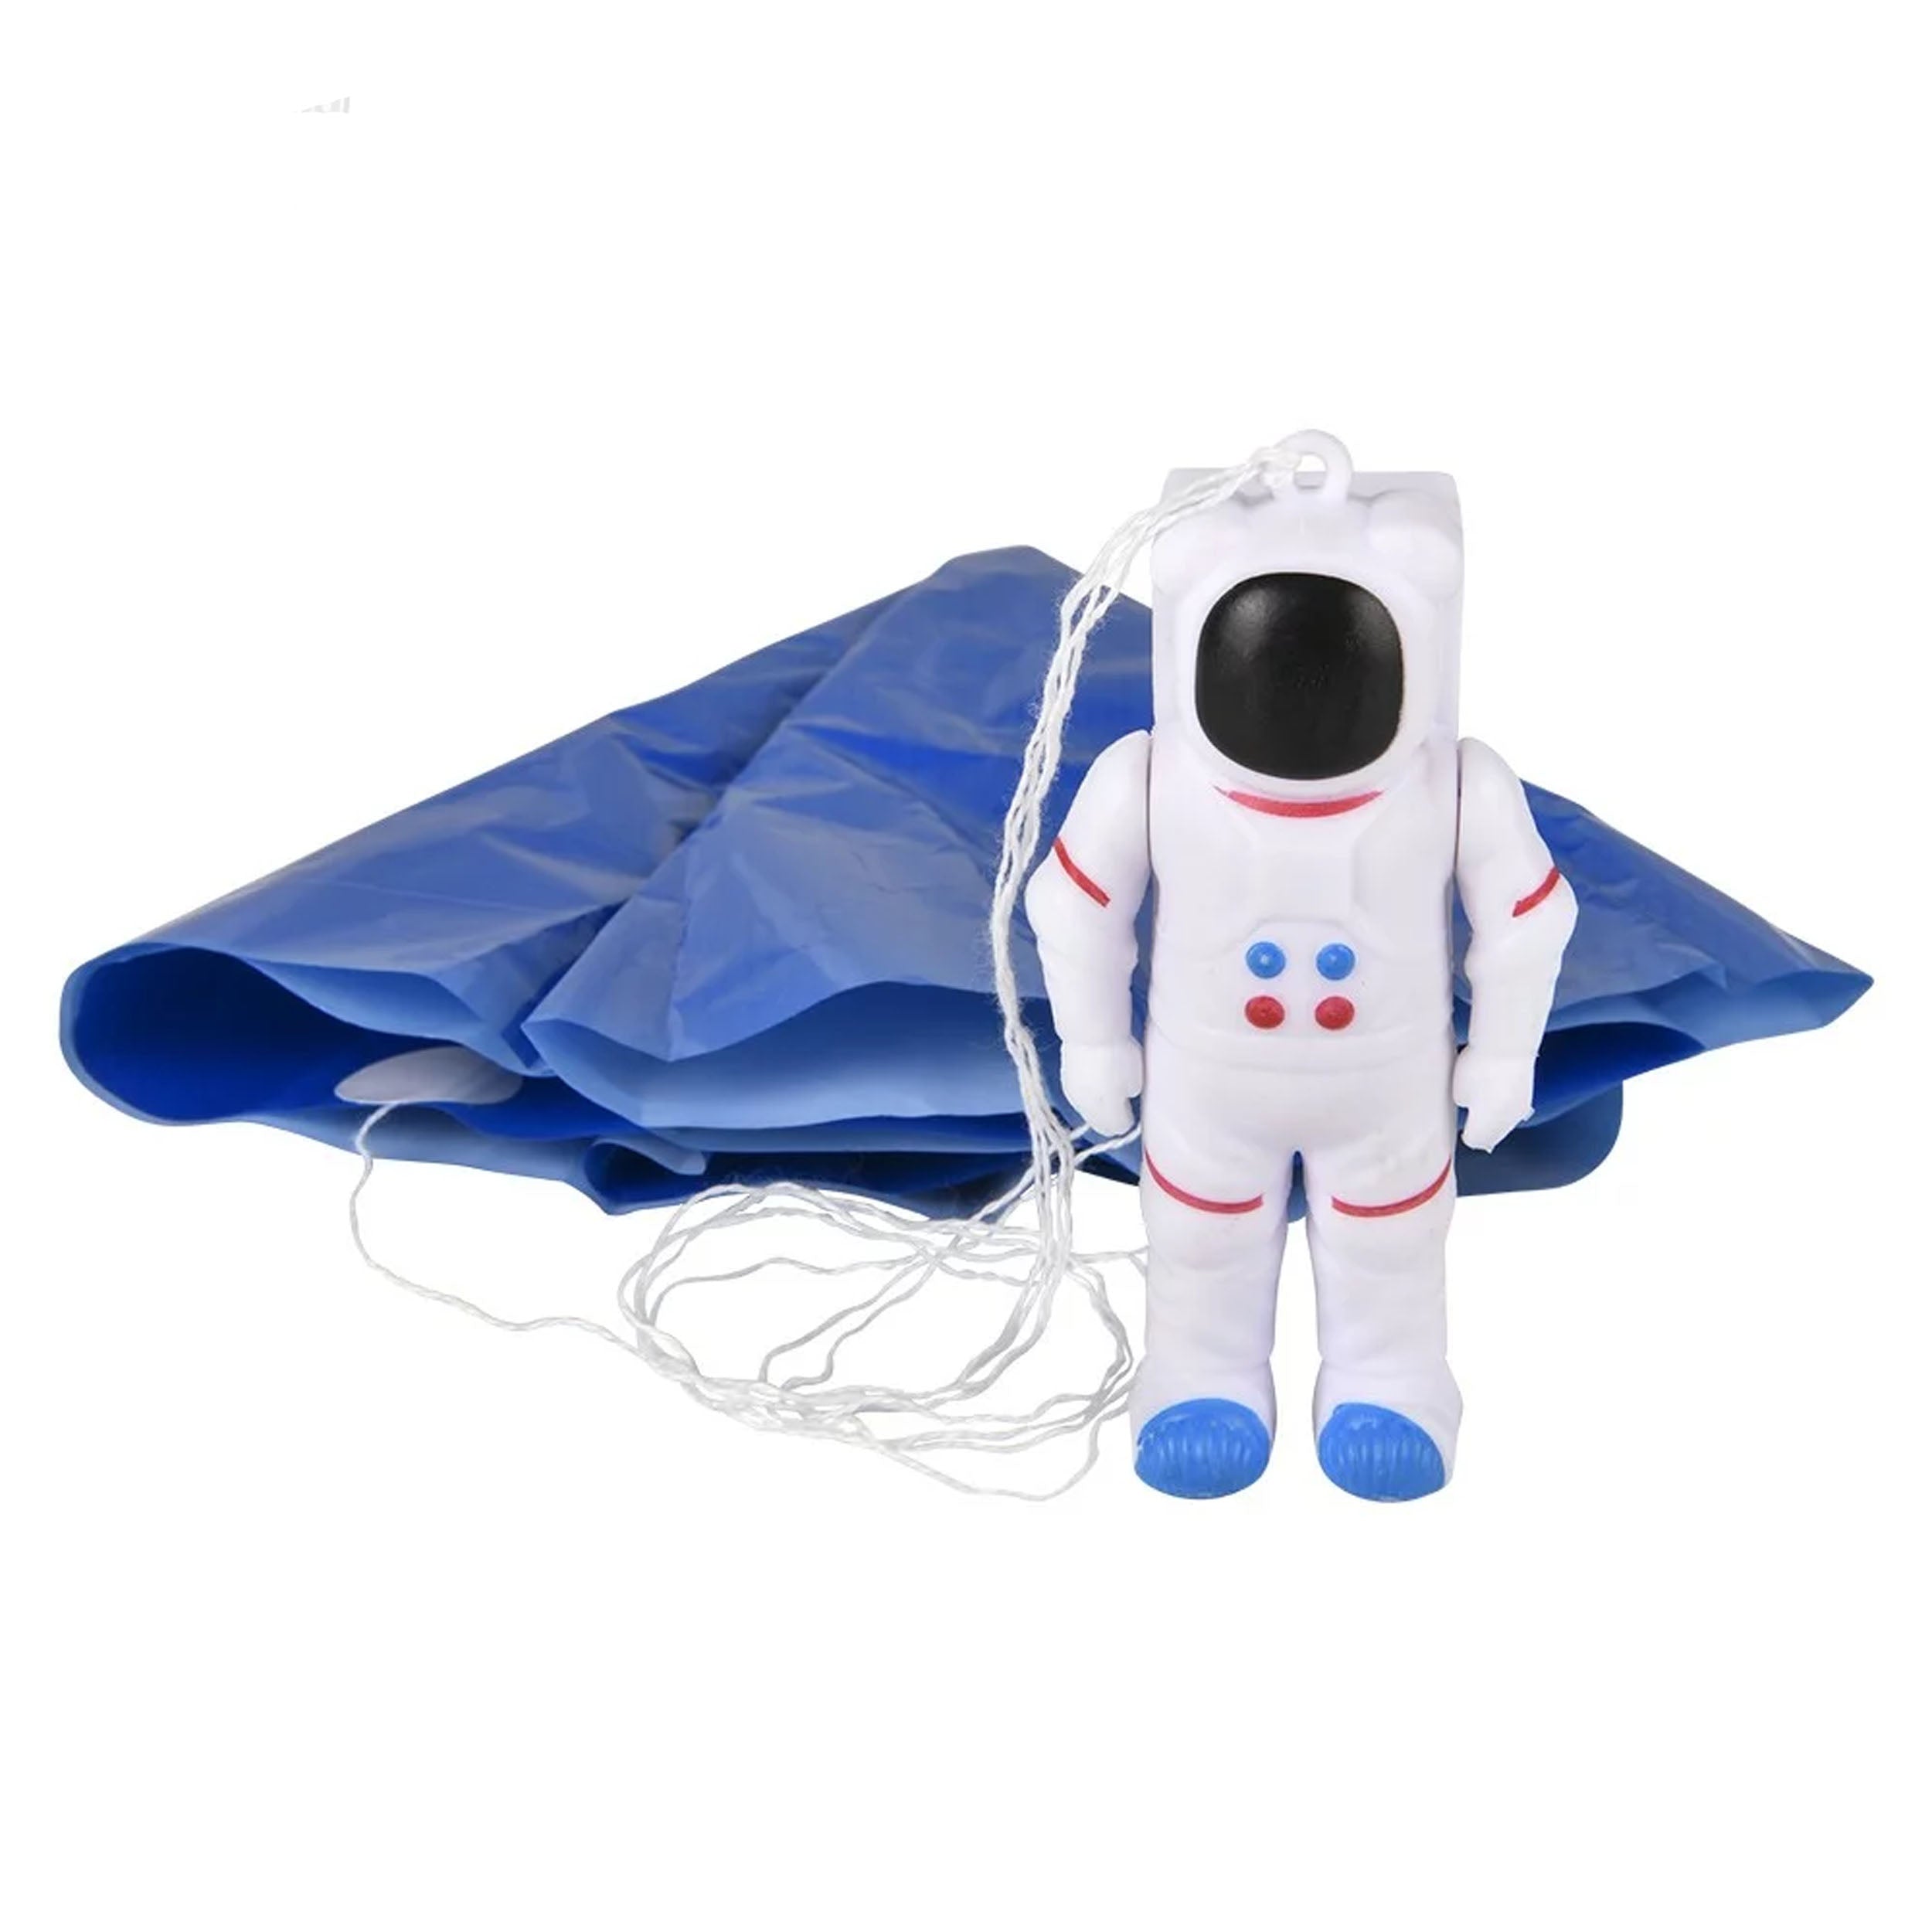 Astronaut  Paratrooper kids toys (24 pieces=$23.99)